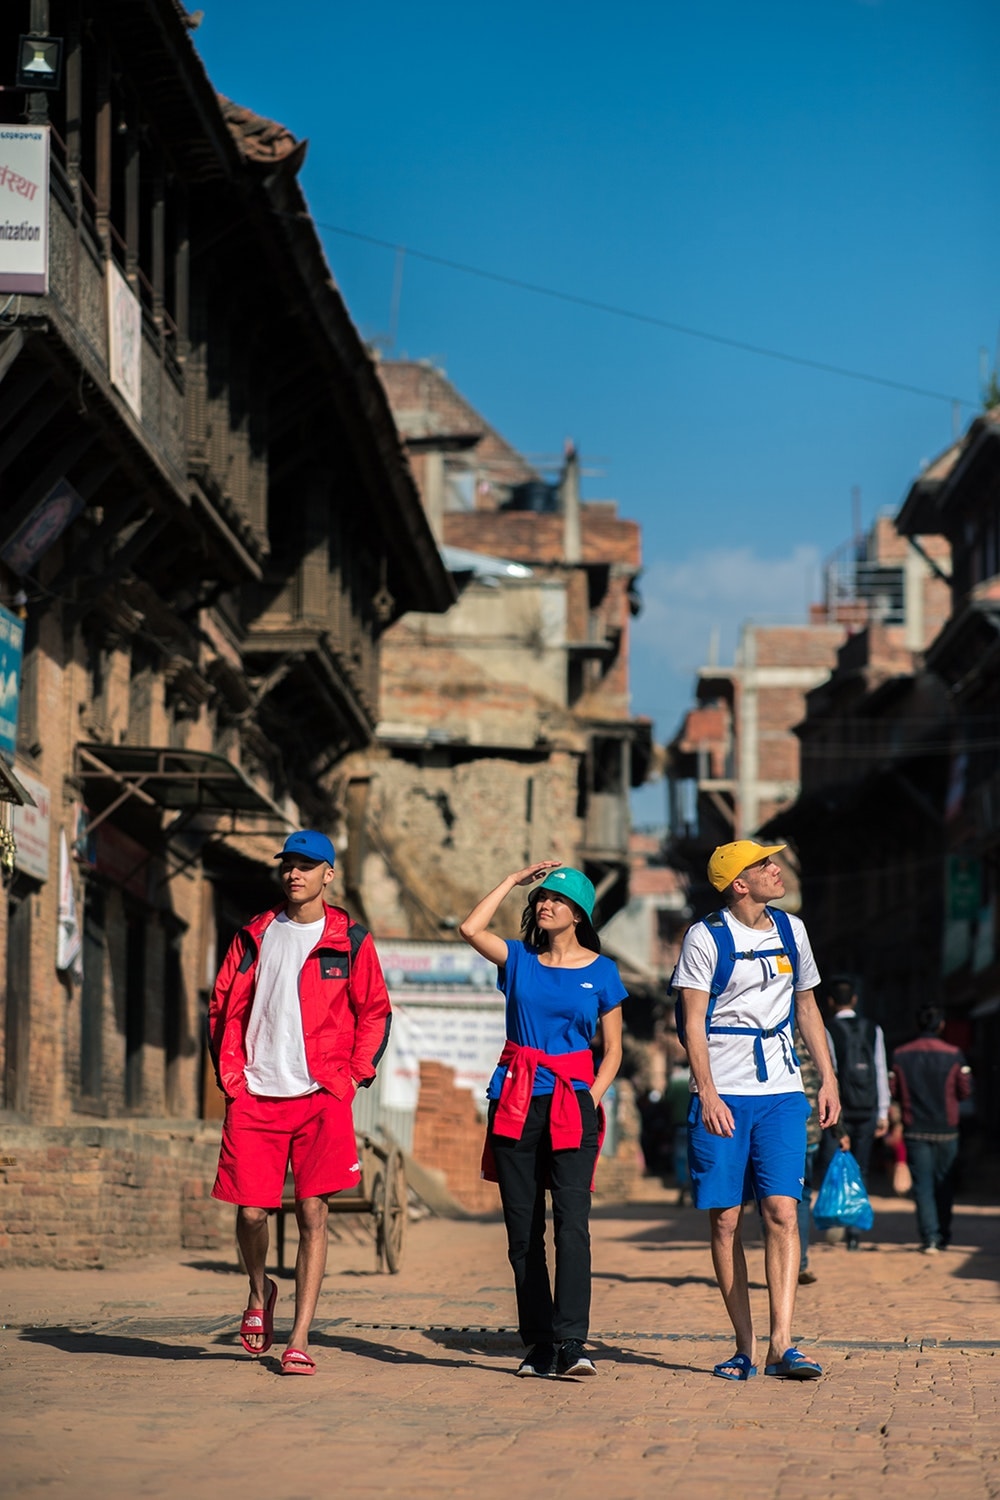 仏教祈りの旗に着想を得た The North Face “Khumbu” パックが登場 ファッションや高機能とはかけ離れたネパールのメインストリートで撮影を敢行 Supreme シュプリーム 2018年春コレクション BEAMS ビームス The North Face ザ・ノース・フェイス Khumbu カンブ ネパール カンブバリー カトマンズ通り ホワイト レッド ブルー イエロー グリーン ヒマラヤ 仏教祈りの旗 タルチョ マウンテンジャケット ラグランフーディ スライドサンダル バケットハット パネルキャップ HYPEBEAST ハイプビースト